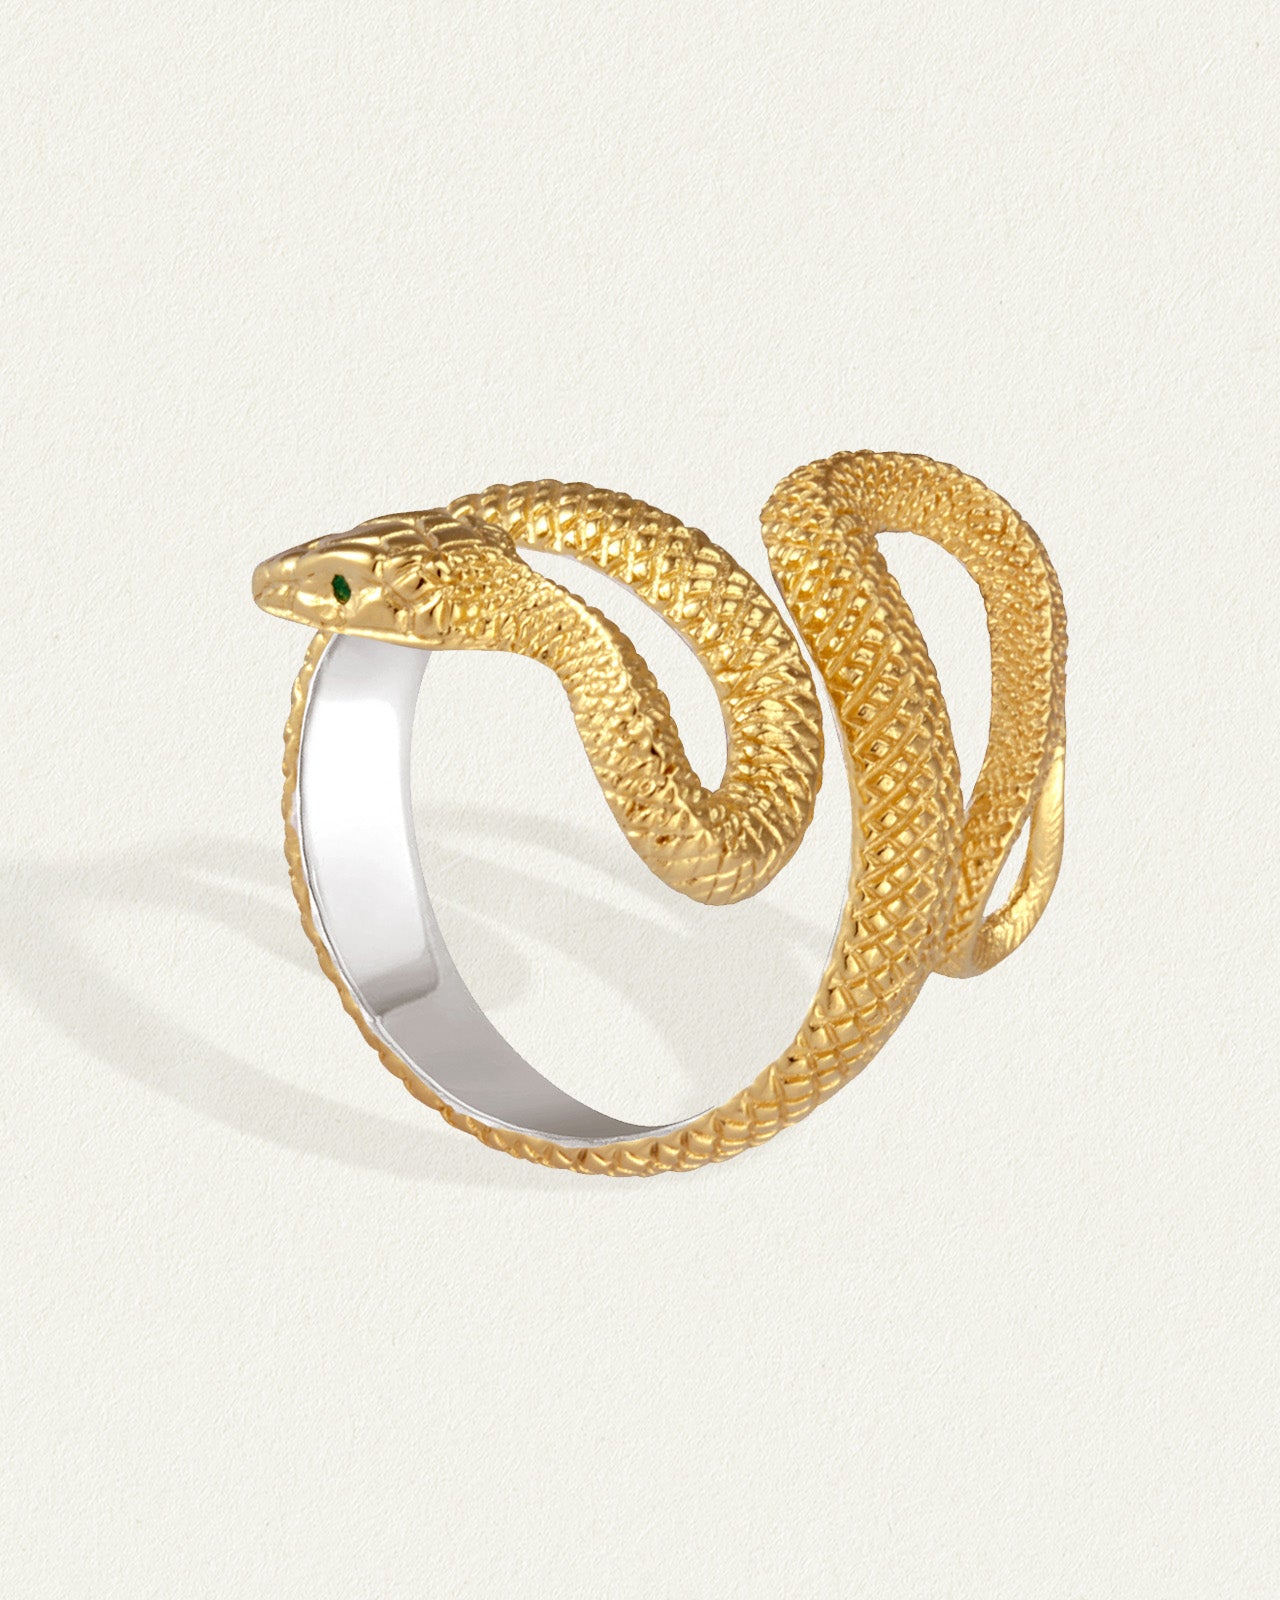 Gold Snake Ring | Adjustable Ring For Women - Joy Store